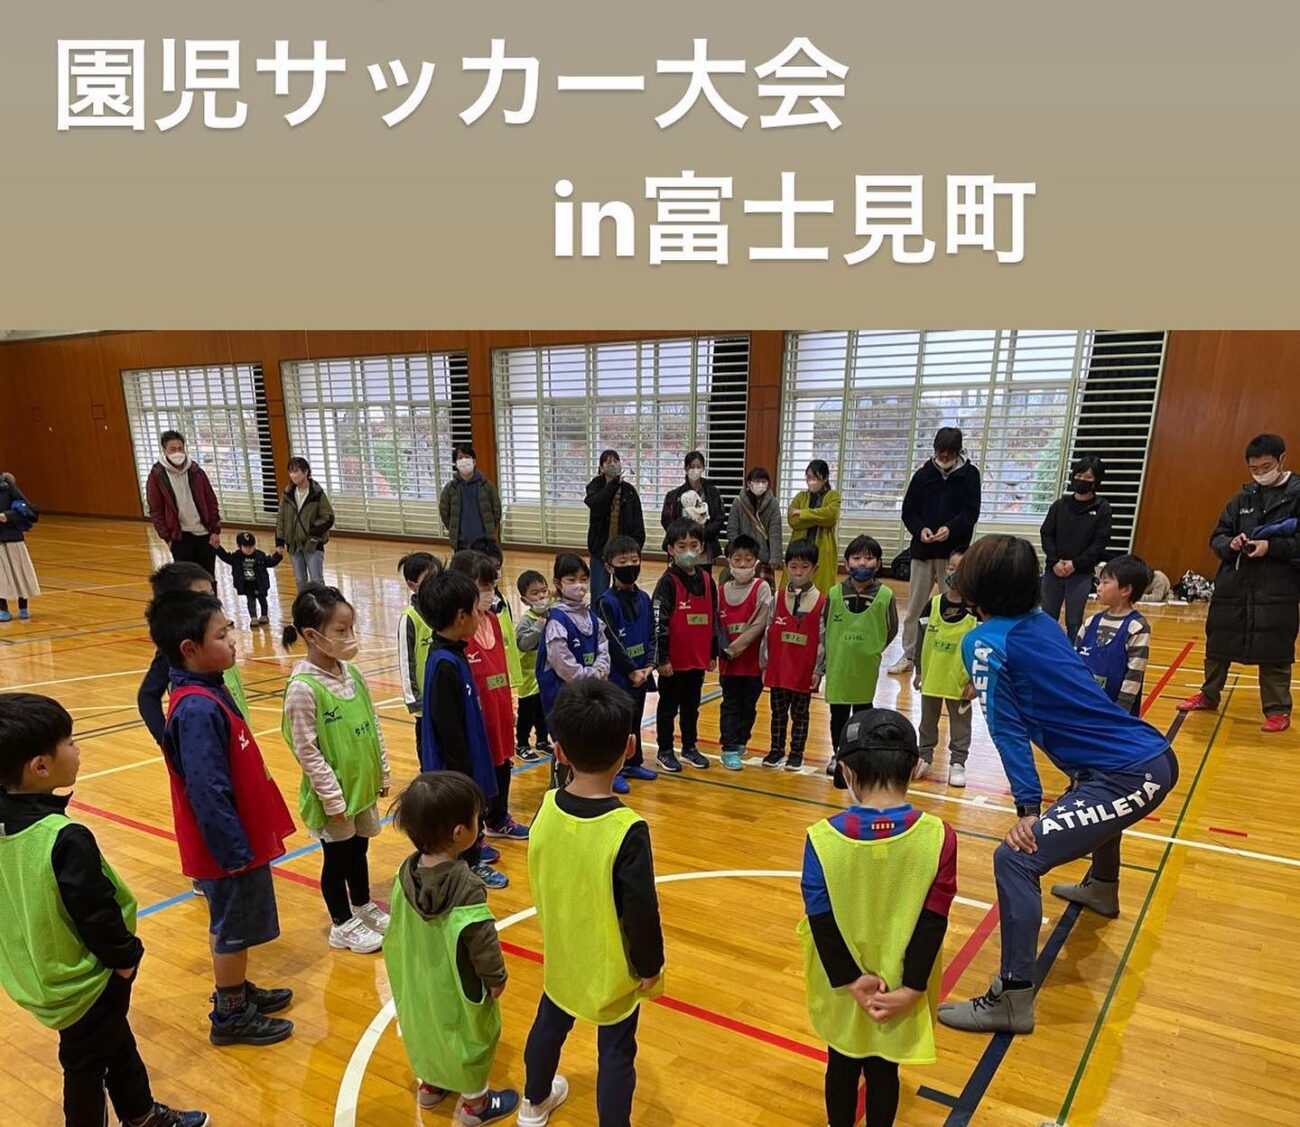 アビエススポーツクラブ-園児サッカー大会in富士見-海洋センター